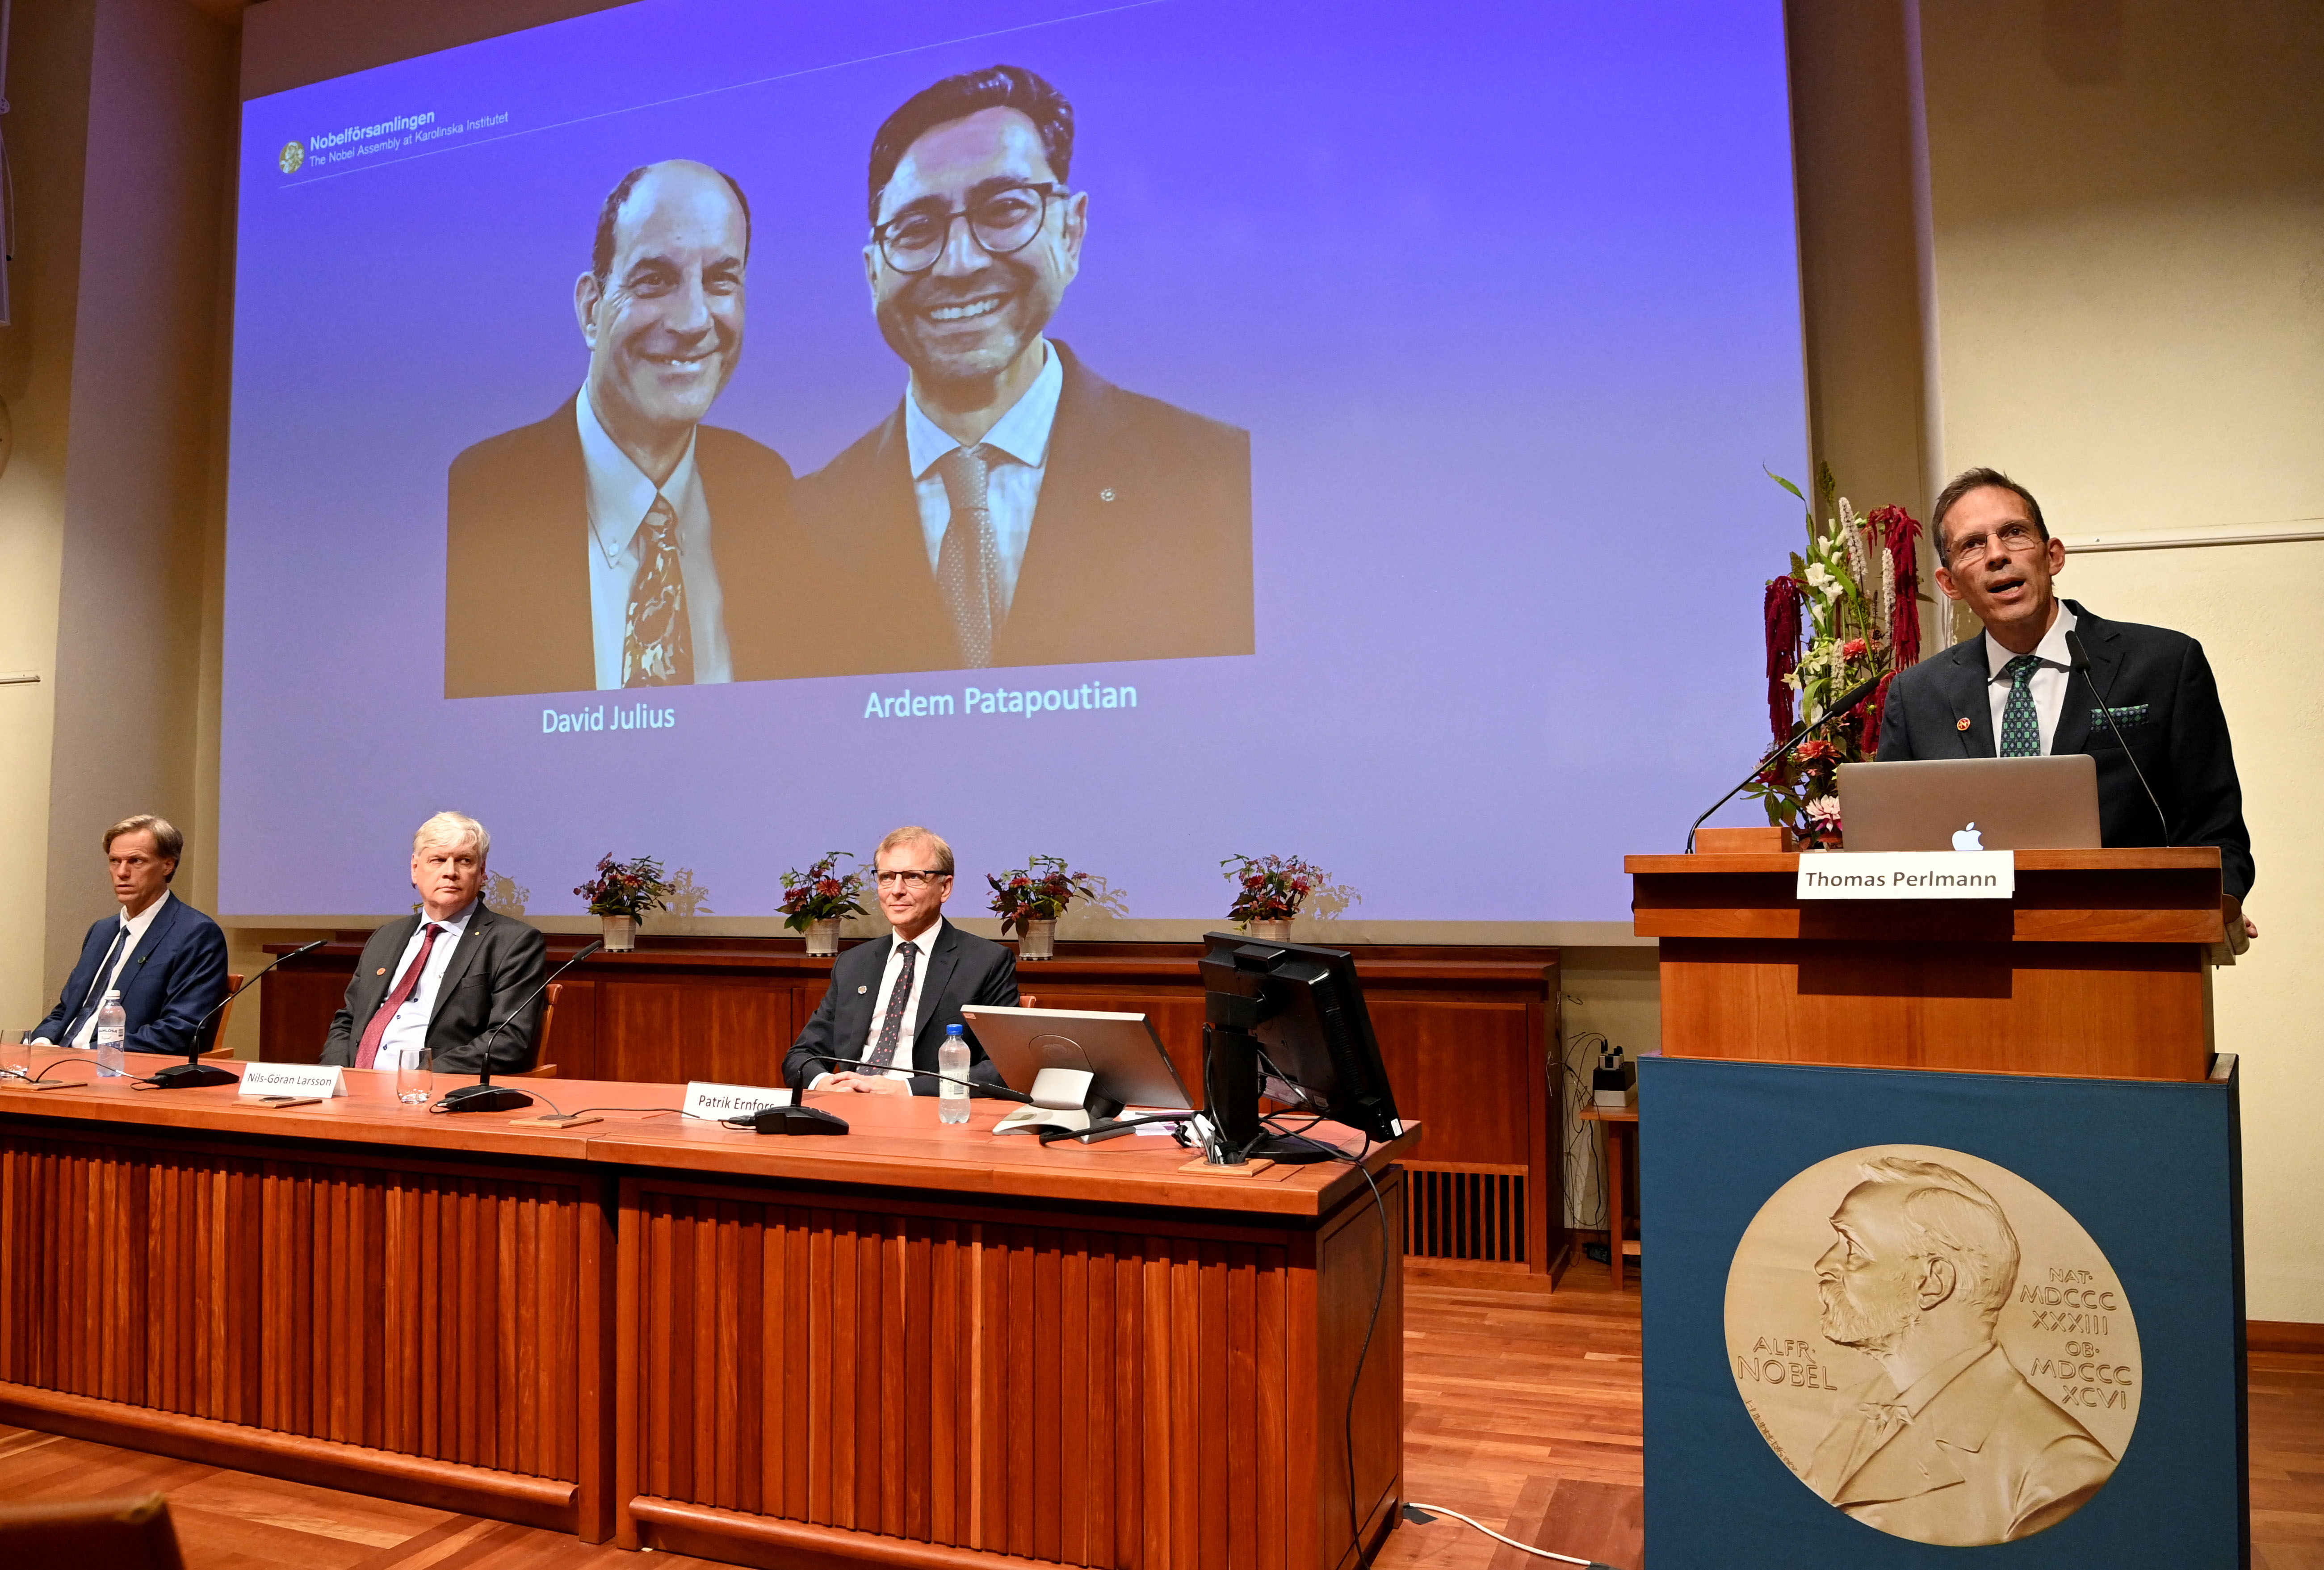 Sekretaris Komite Nobel, Thomas Perlmann (kanan) berdiri di samping layar yang memperlihatkan  pemenang Hadiah Nobel bidang Fisiologi atau Kedokteran 2021, David Julius (kiri) dan Ardem Patapoutian, selama konferensi pers di Institut Karolinska di Stockholm, Swedia, pada 4 Oktober 2021.  ( Foto: JONATHAN NACKSTRAND / AFP )